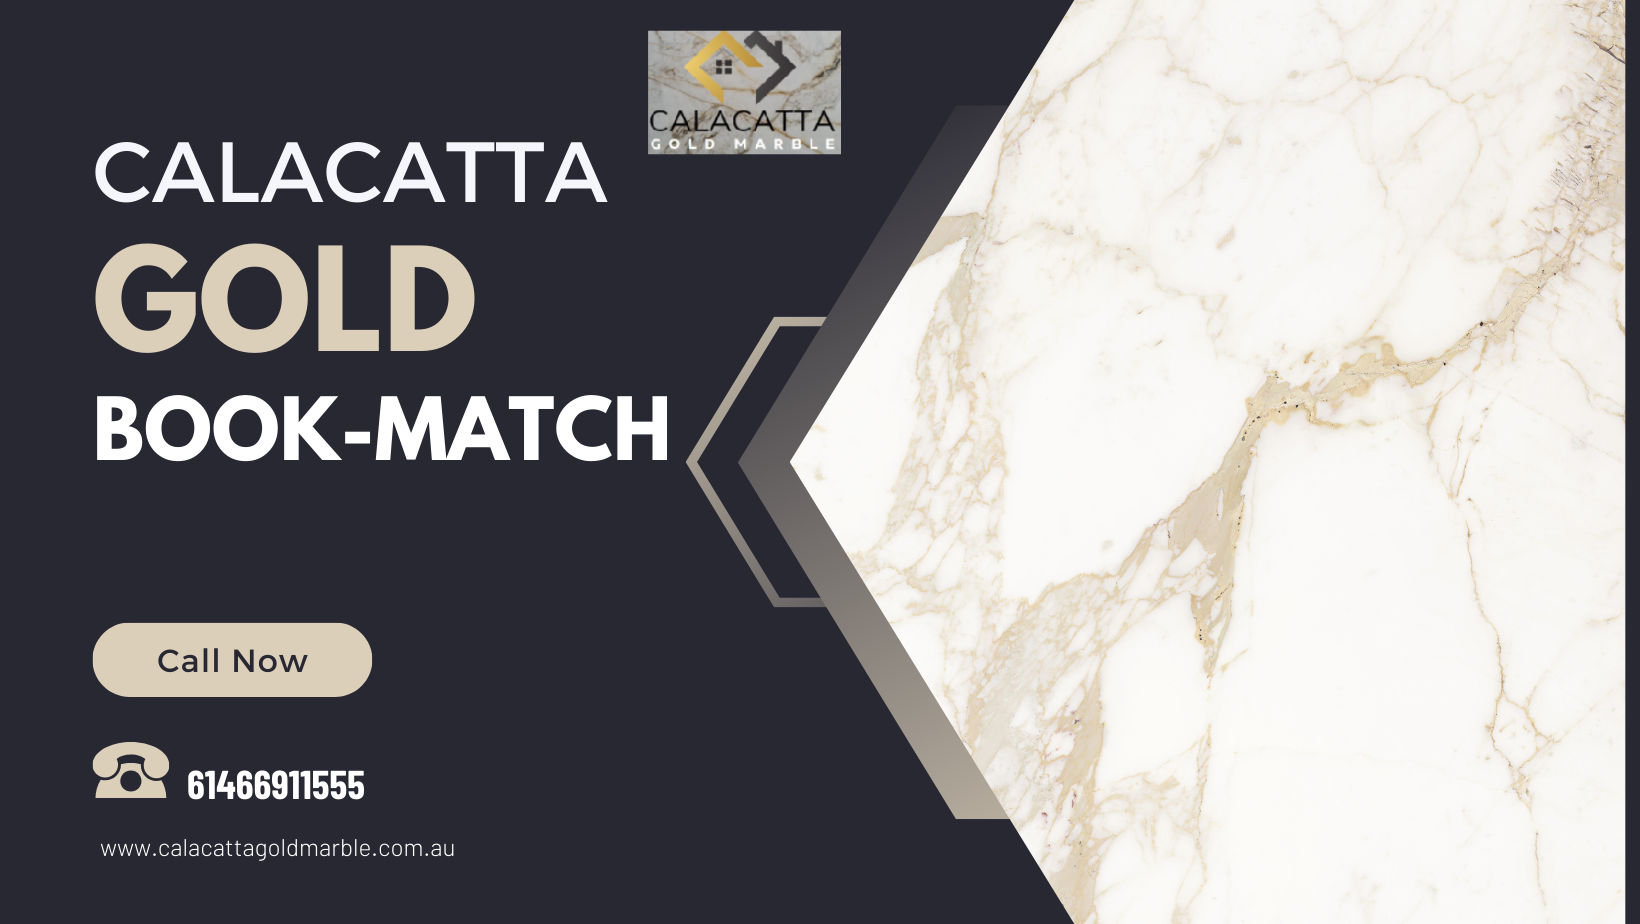 Calacatta Gold Book-Match 